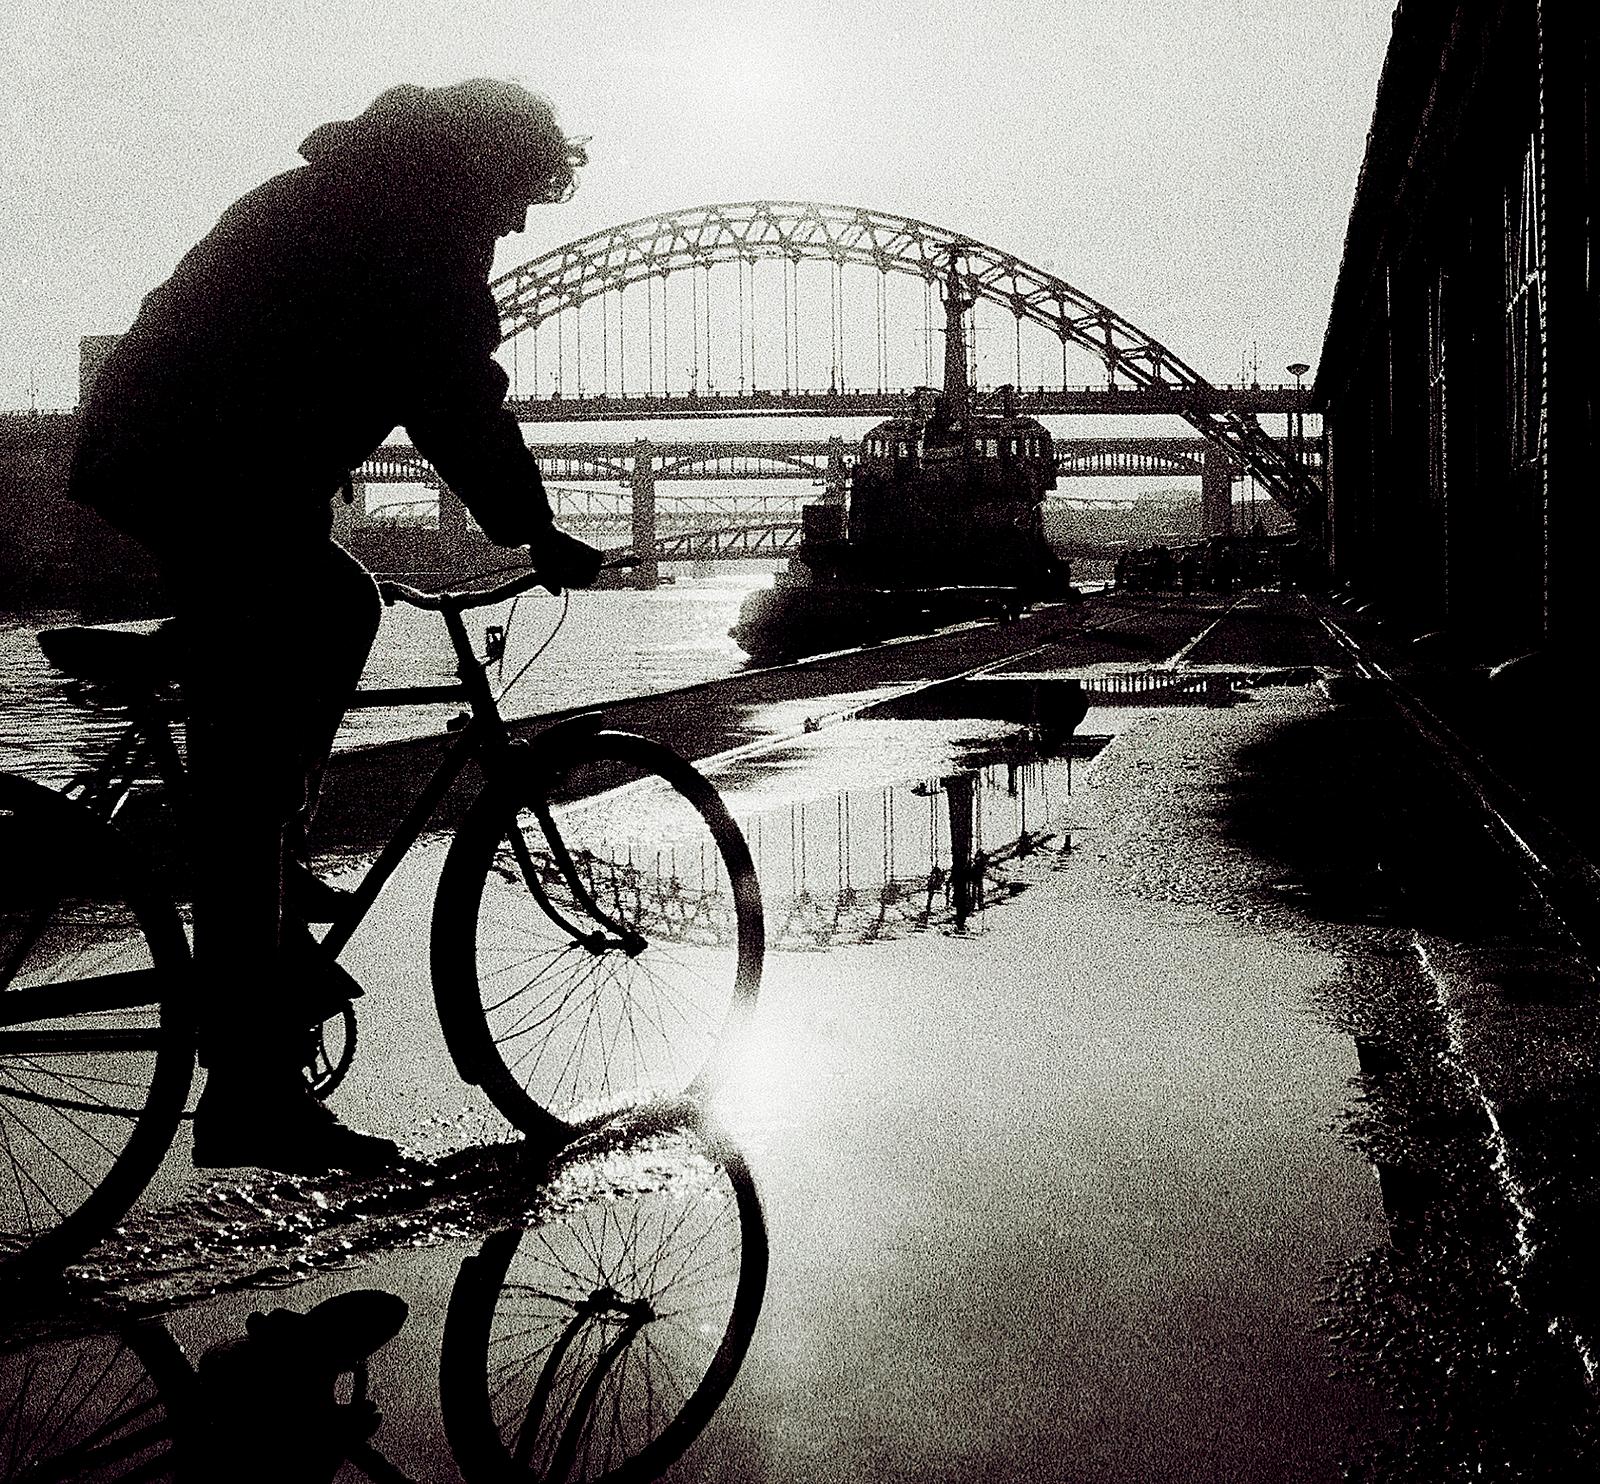 Newcastle – signierter Kunstdruck in limitierter Auflage, schwarz-weiß, zeitgenössisch (Zeitgenössisch), Photograph, von Ian Sanderson